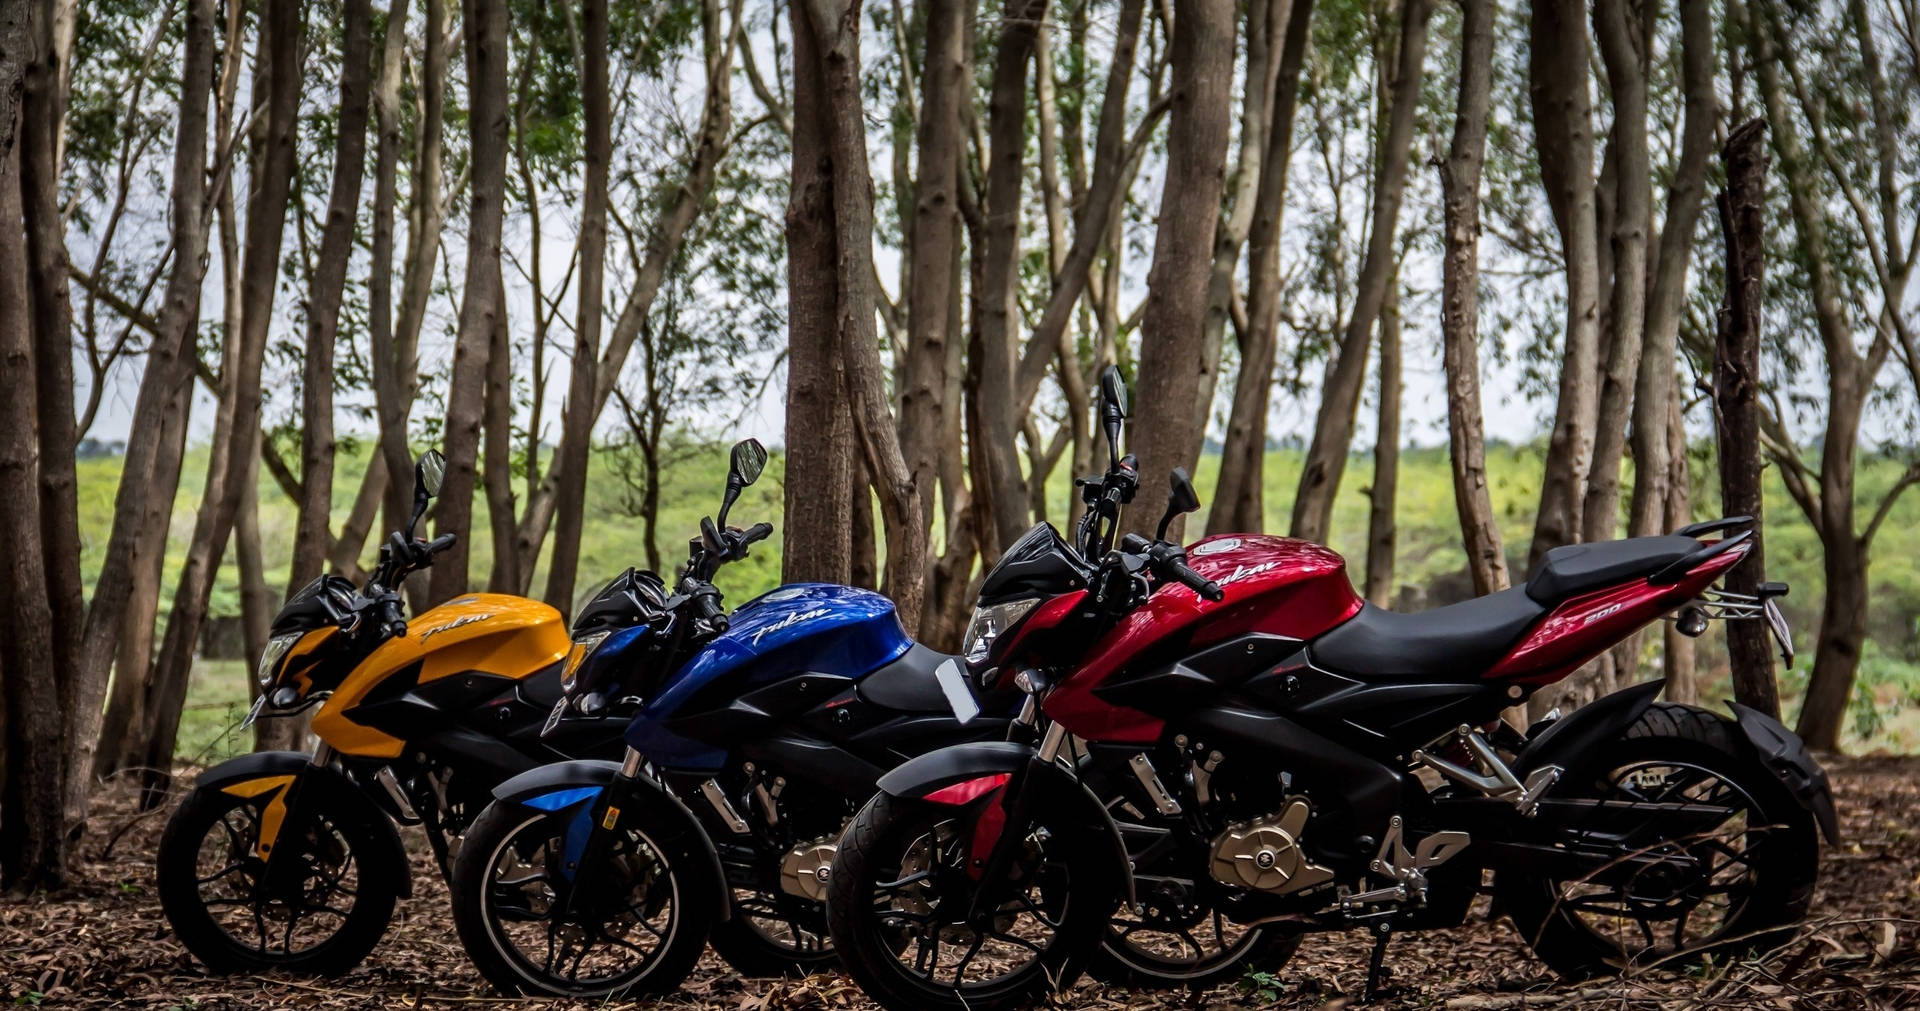 NS 200 Motorcykler i skovscene skaber et naturligt udtryk. Wallpaper